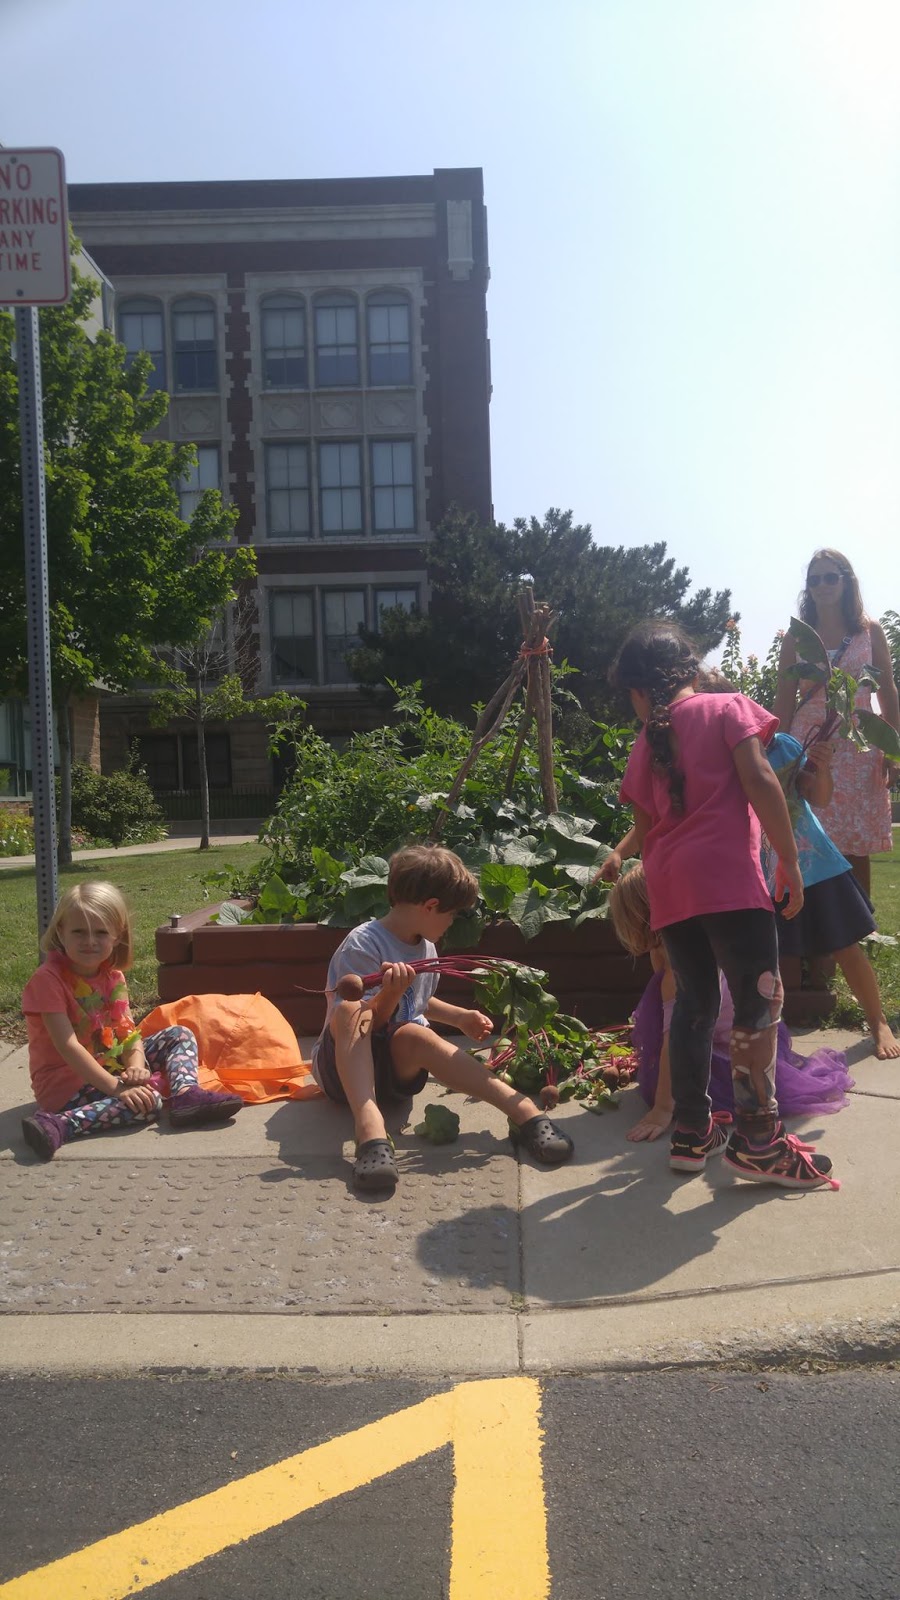 M.O.L.E. Garden - Montessori Outdoor Learning Experience | 342 Clinton St, Buffalo, NY 14204 | Phone: (716) 783-9653